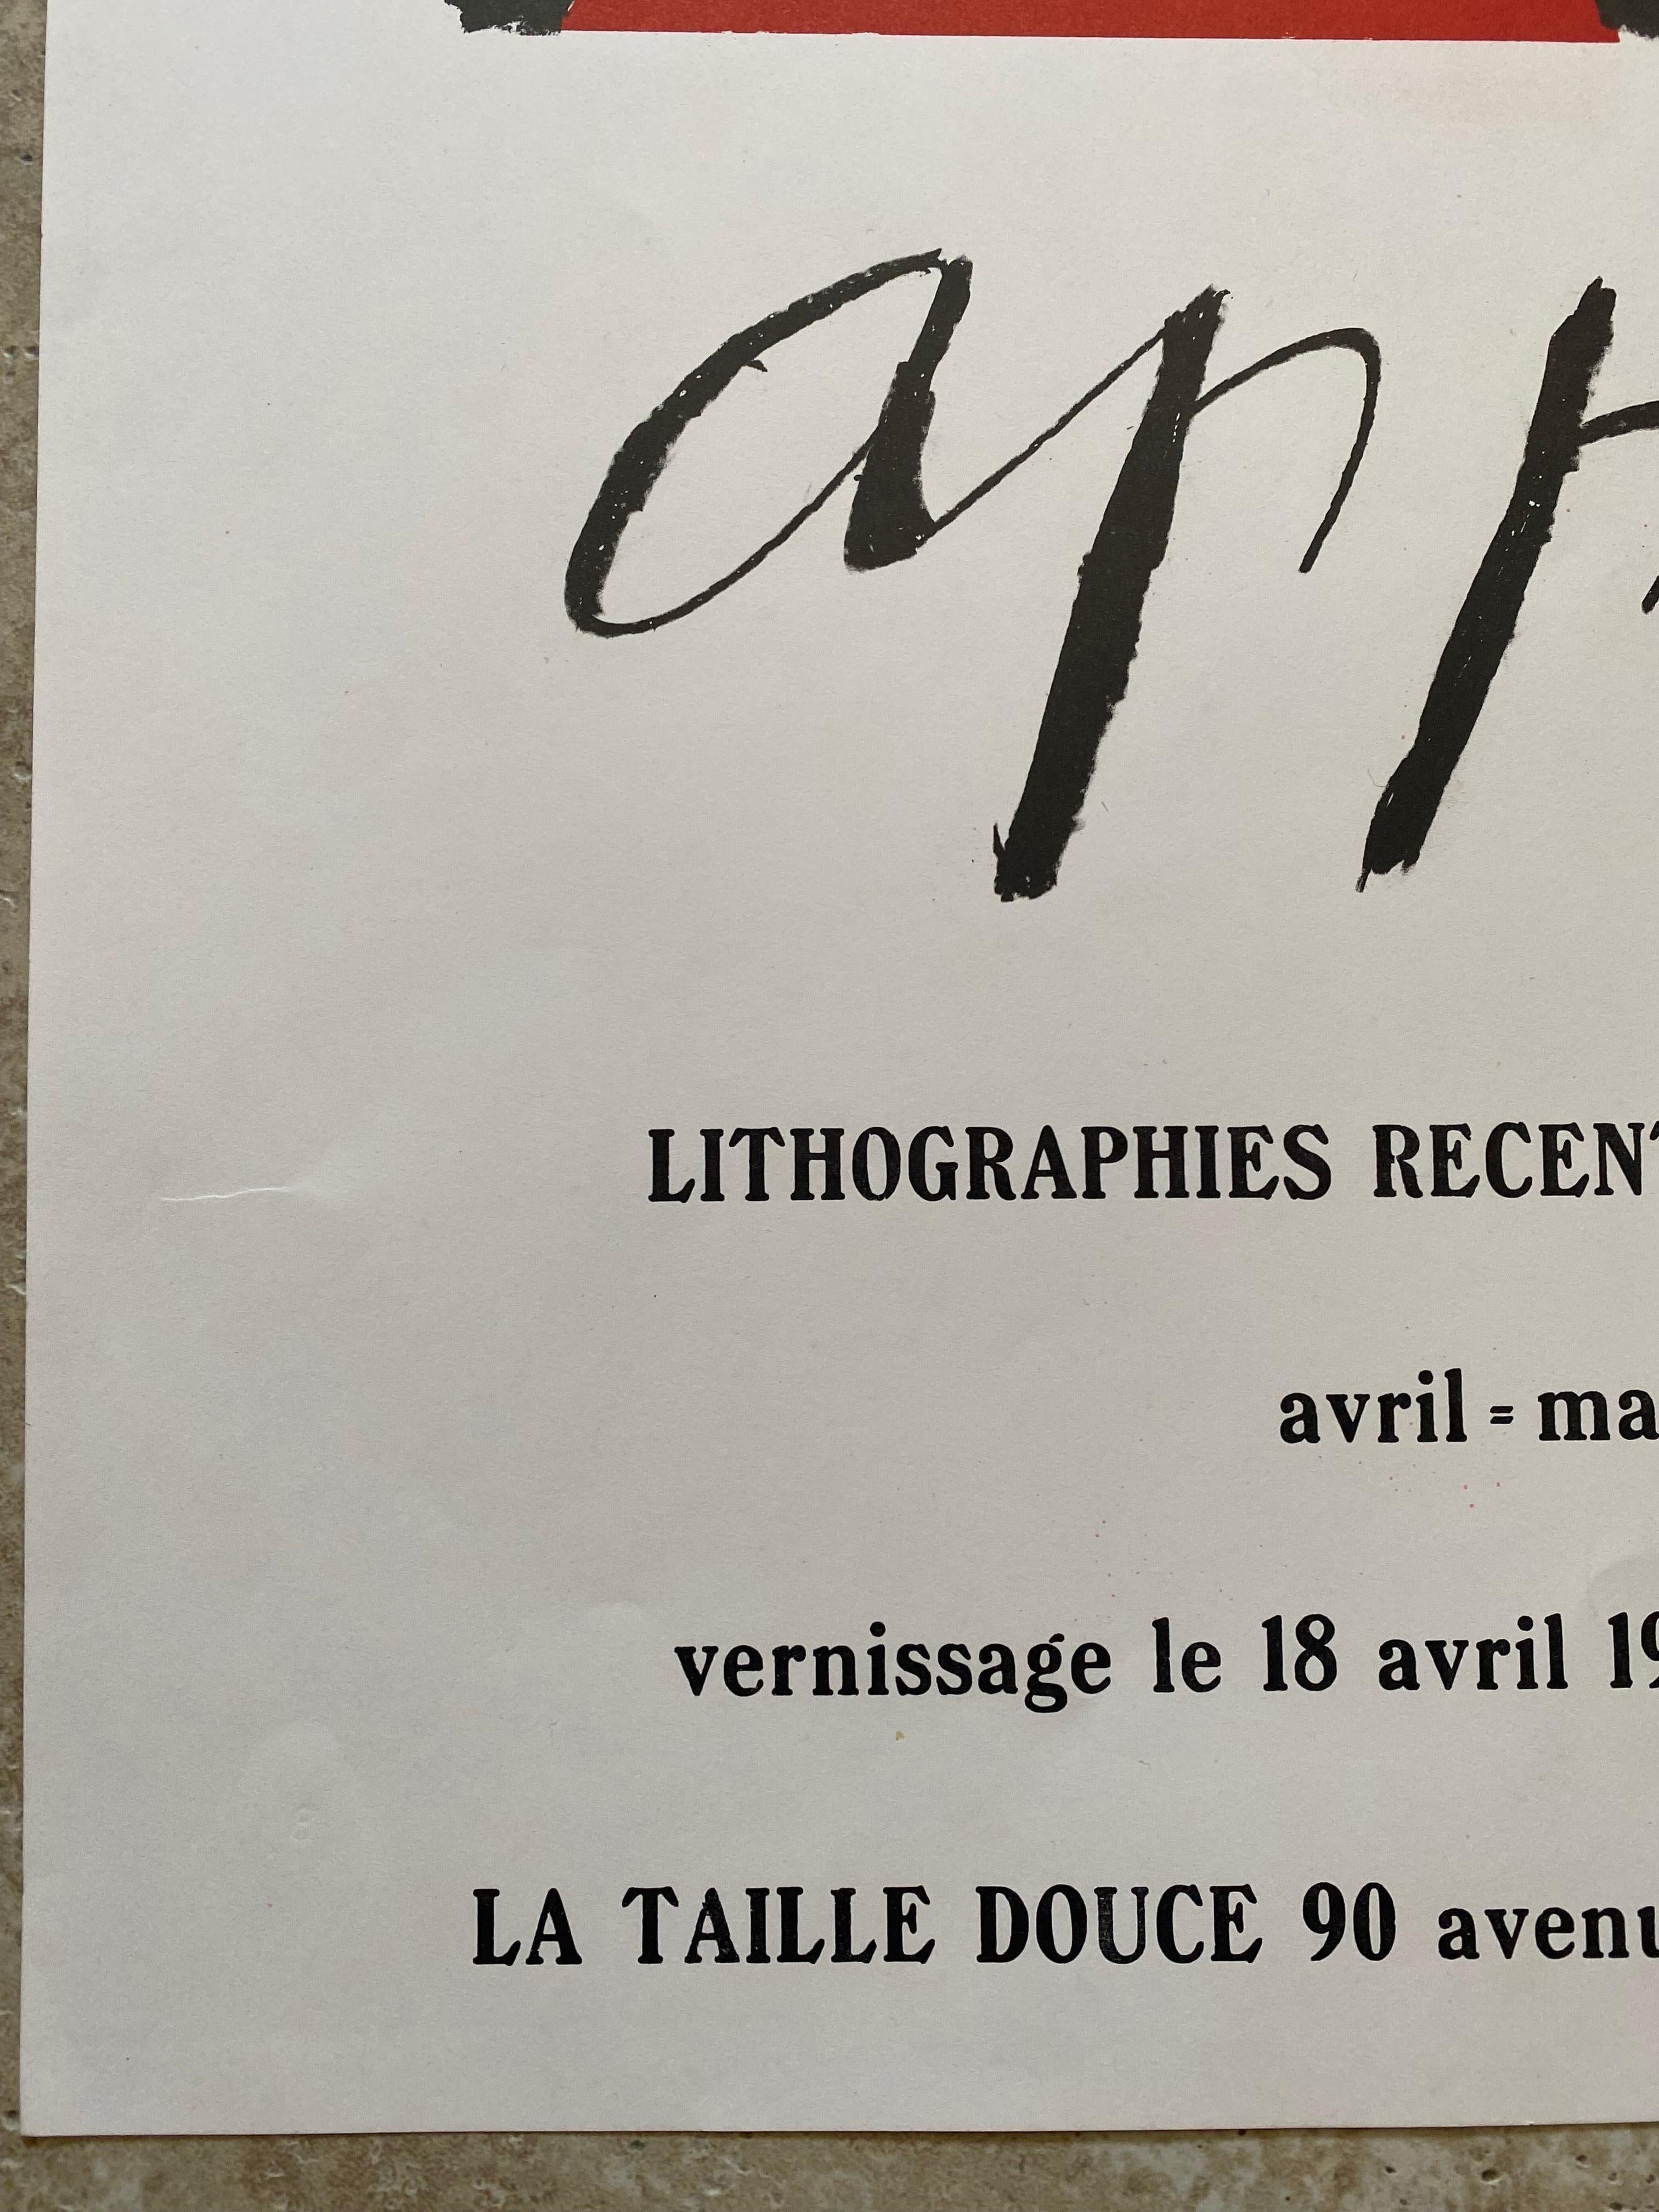 Belge Lithographie publicitaire signée Karel Appel, 1969 en vente